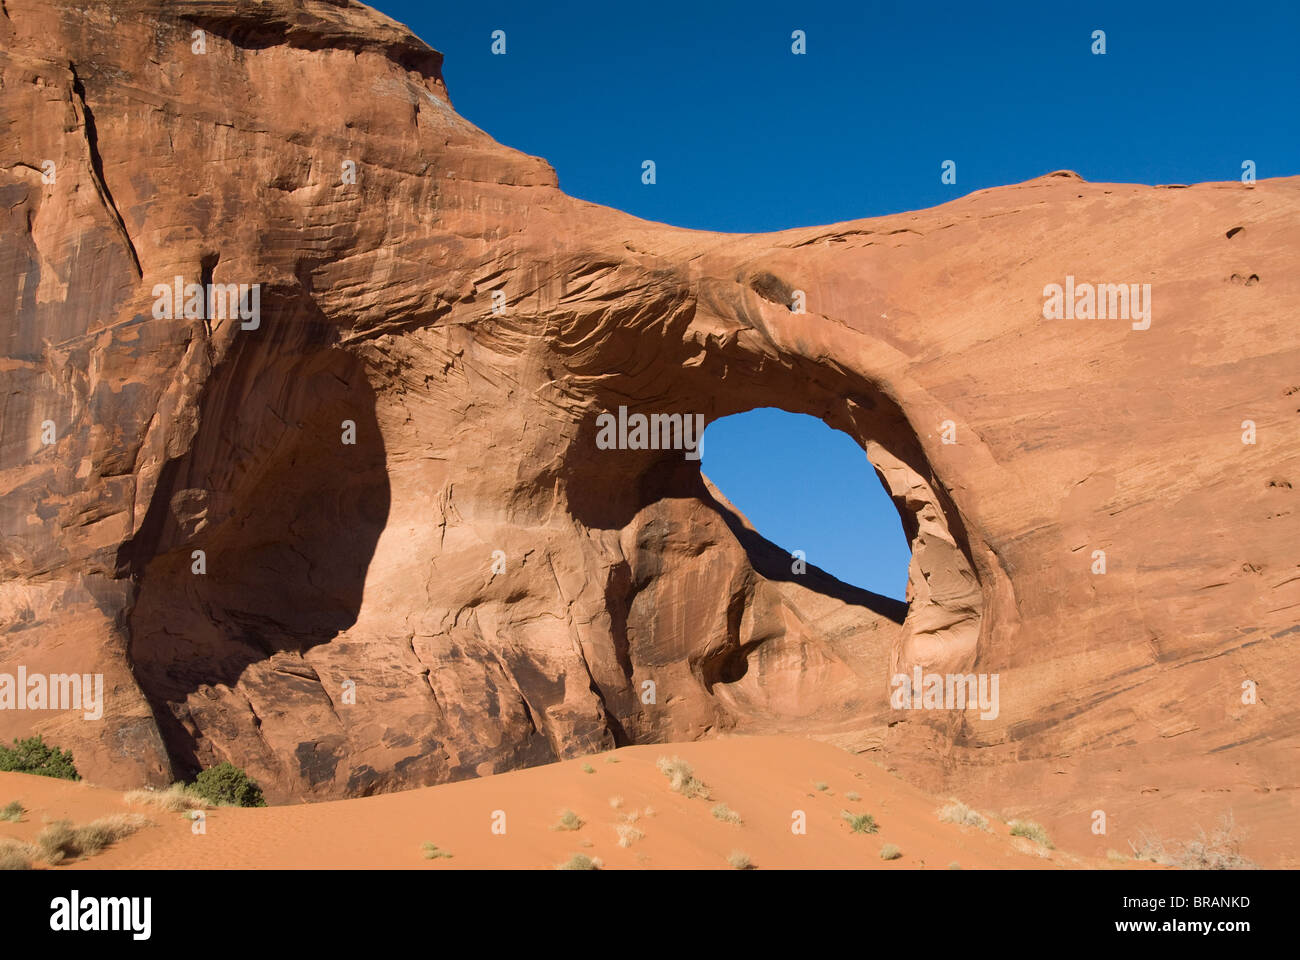 Orecchio del vento Arch, Mistero Valley, il parco tribale Navajo Monument Valley, Arizona, Stati Uniti d'America, America del Nord Foto Stock